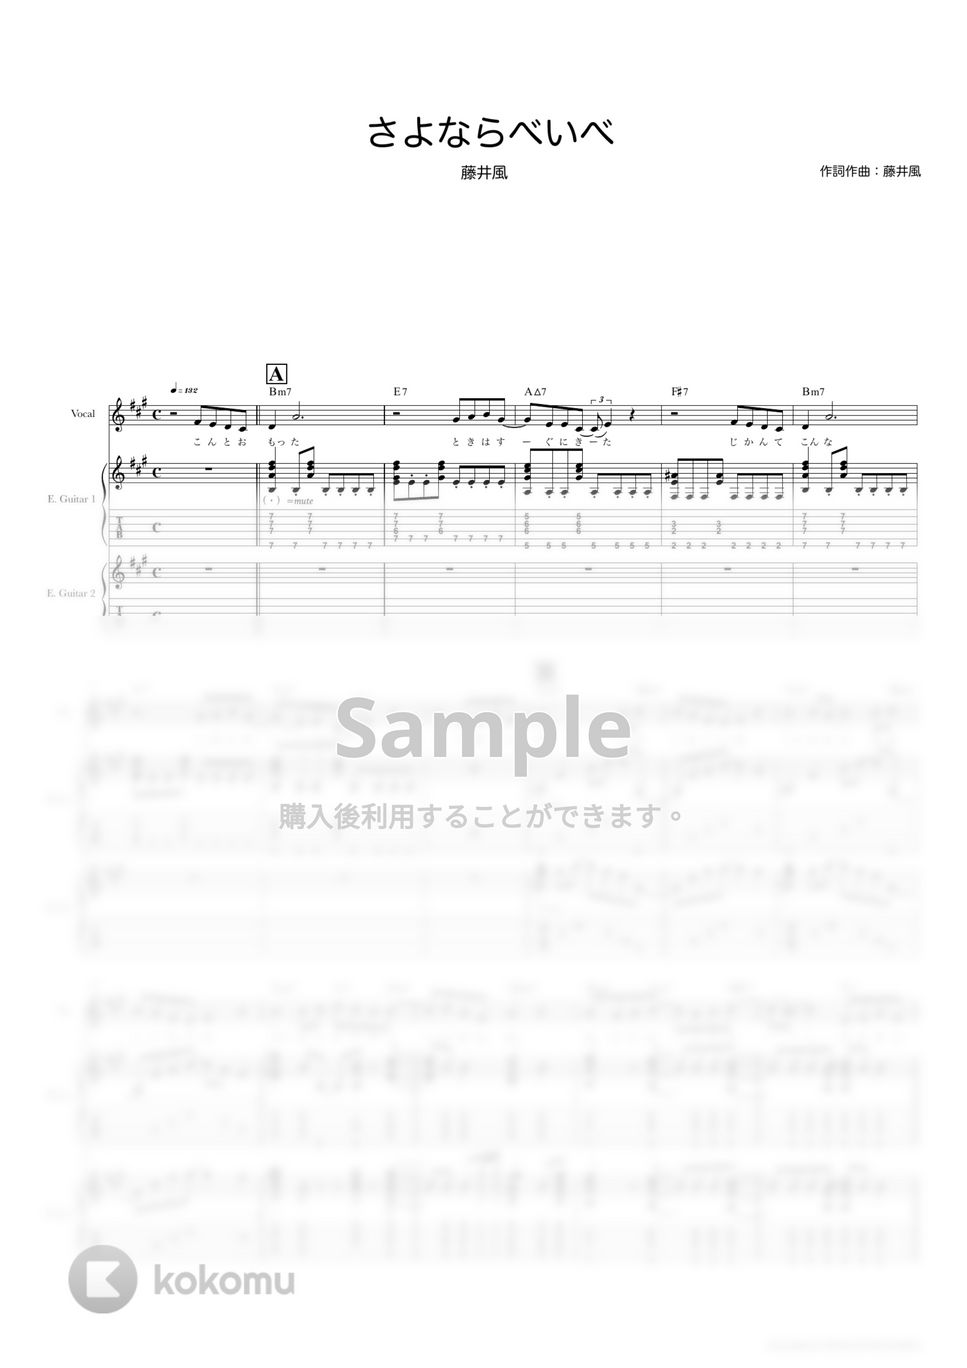 藤井 風 - さよならべいべ (ギタースコア・歌詞・コード付き) by TRIAD GUITAR SCHOOL